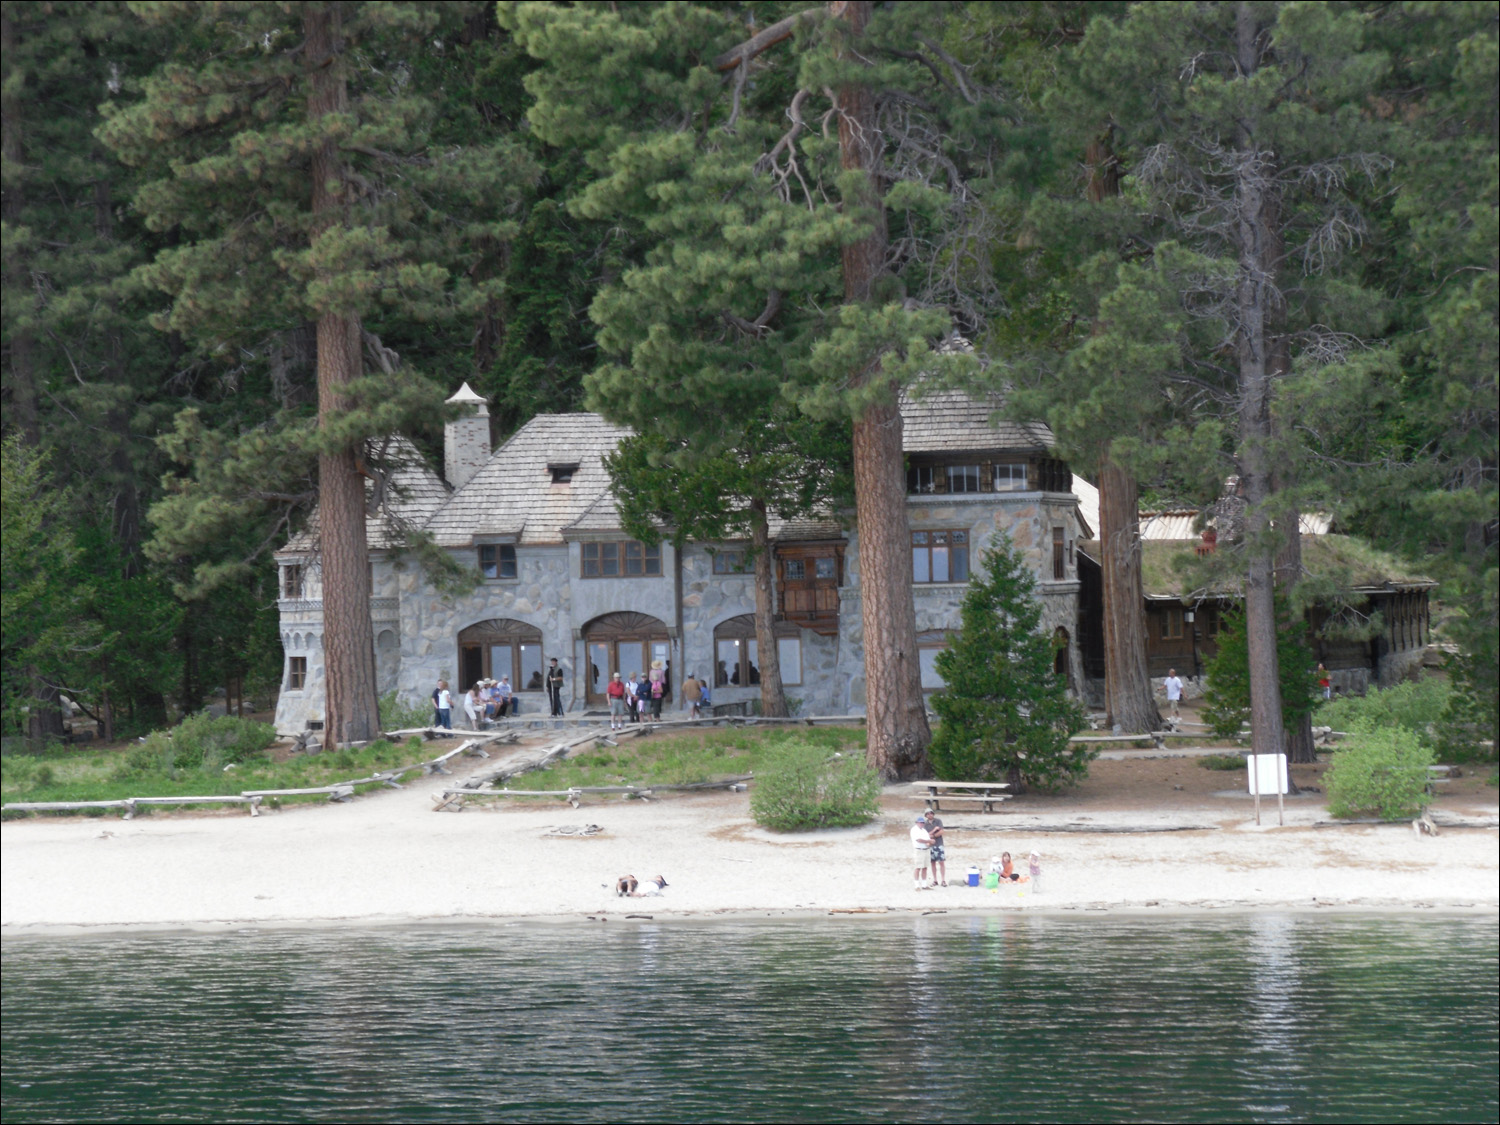 MS Dixie 2 Lake Tahoe Cruise- Vikingsholm mansion in Emerald Bay